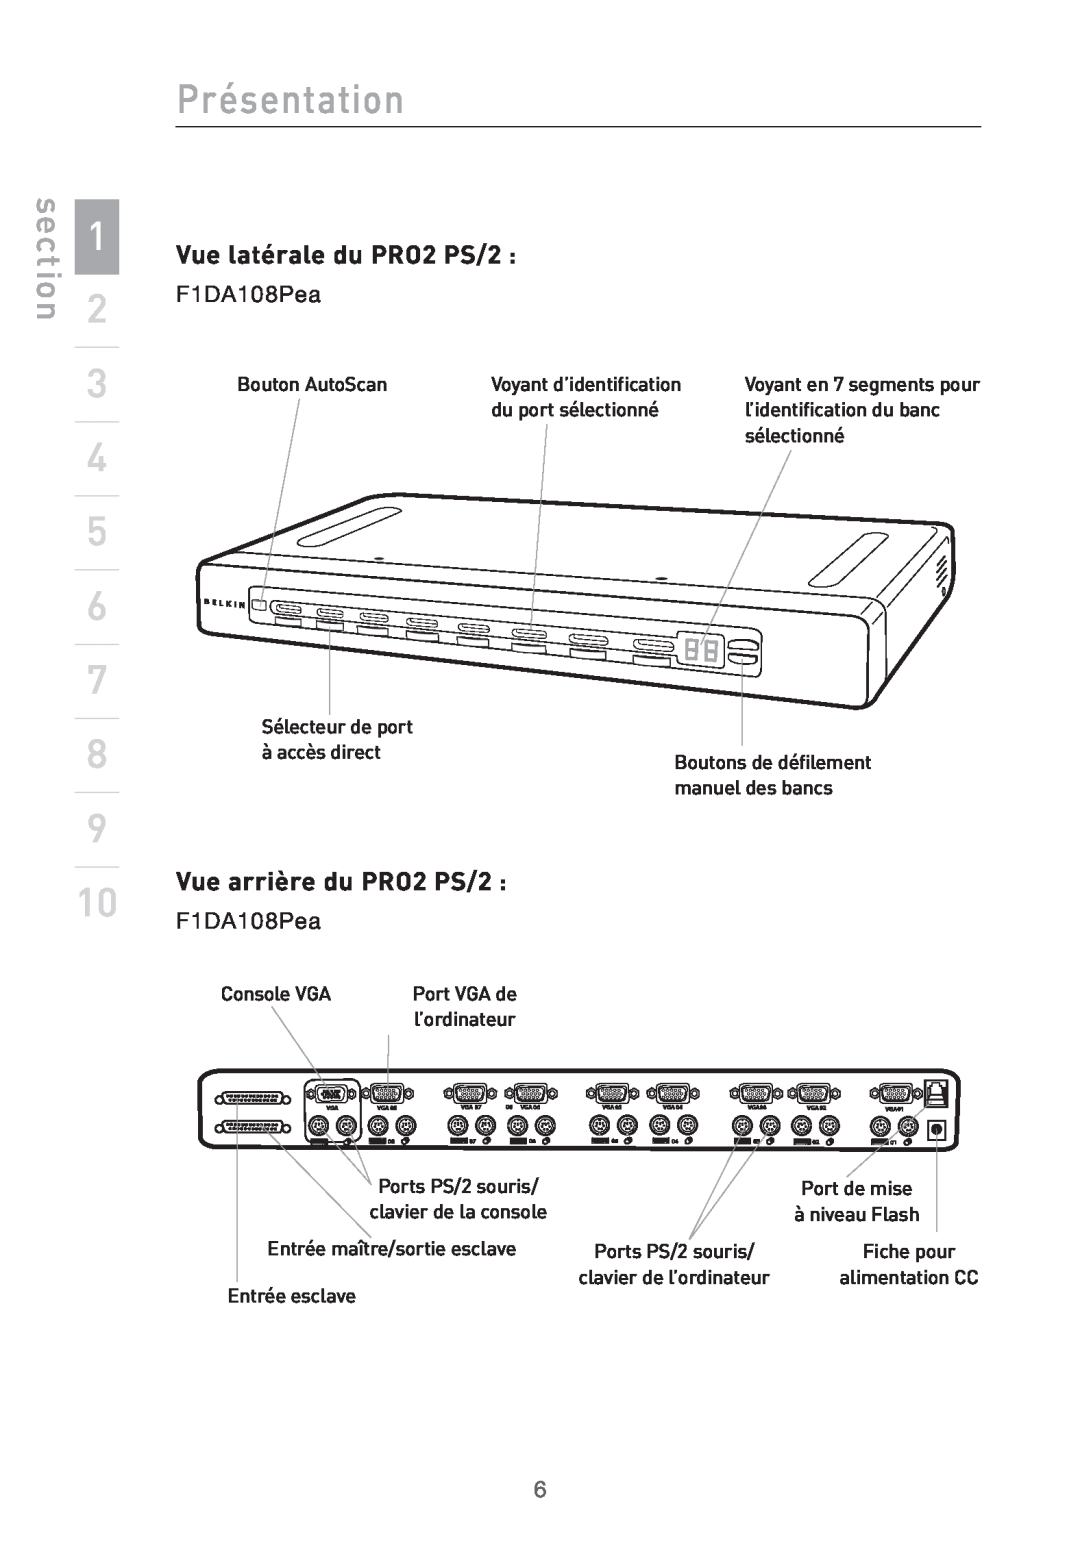 Belkin user manual Vue arrière du PRO2 PS/2, Présentation, section, Vue latérale du PRO2 PS/2, Bouton AutoScan 